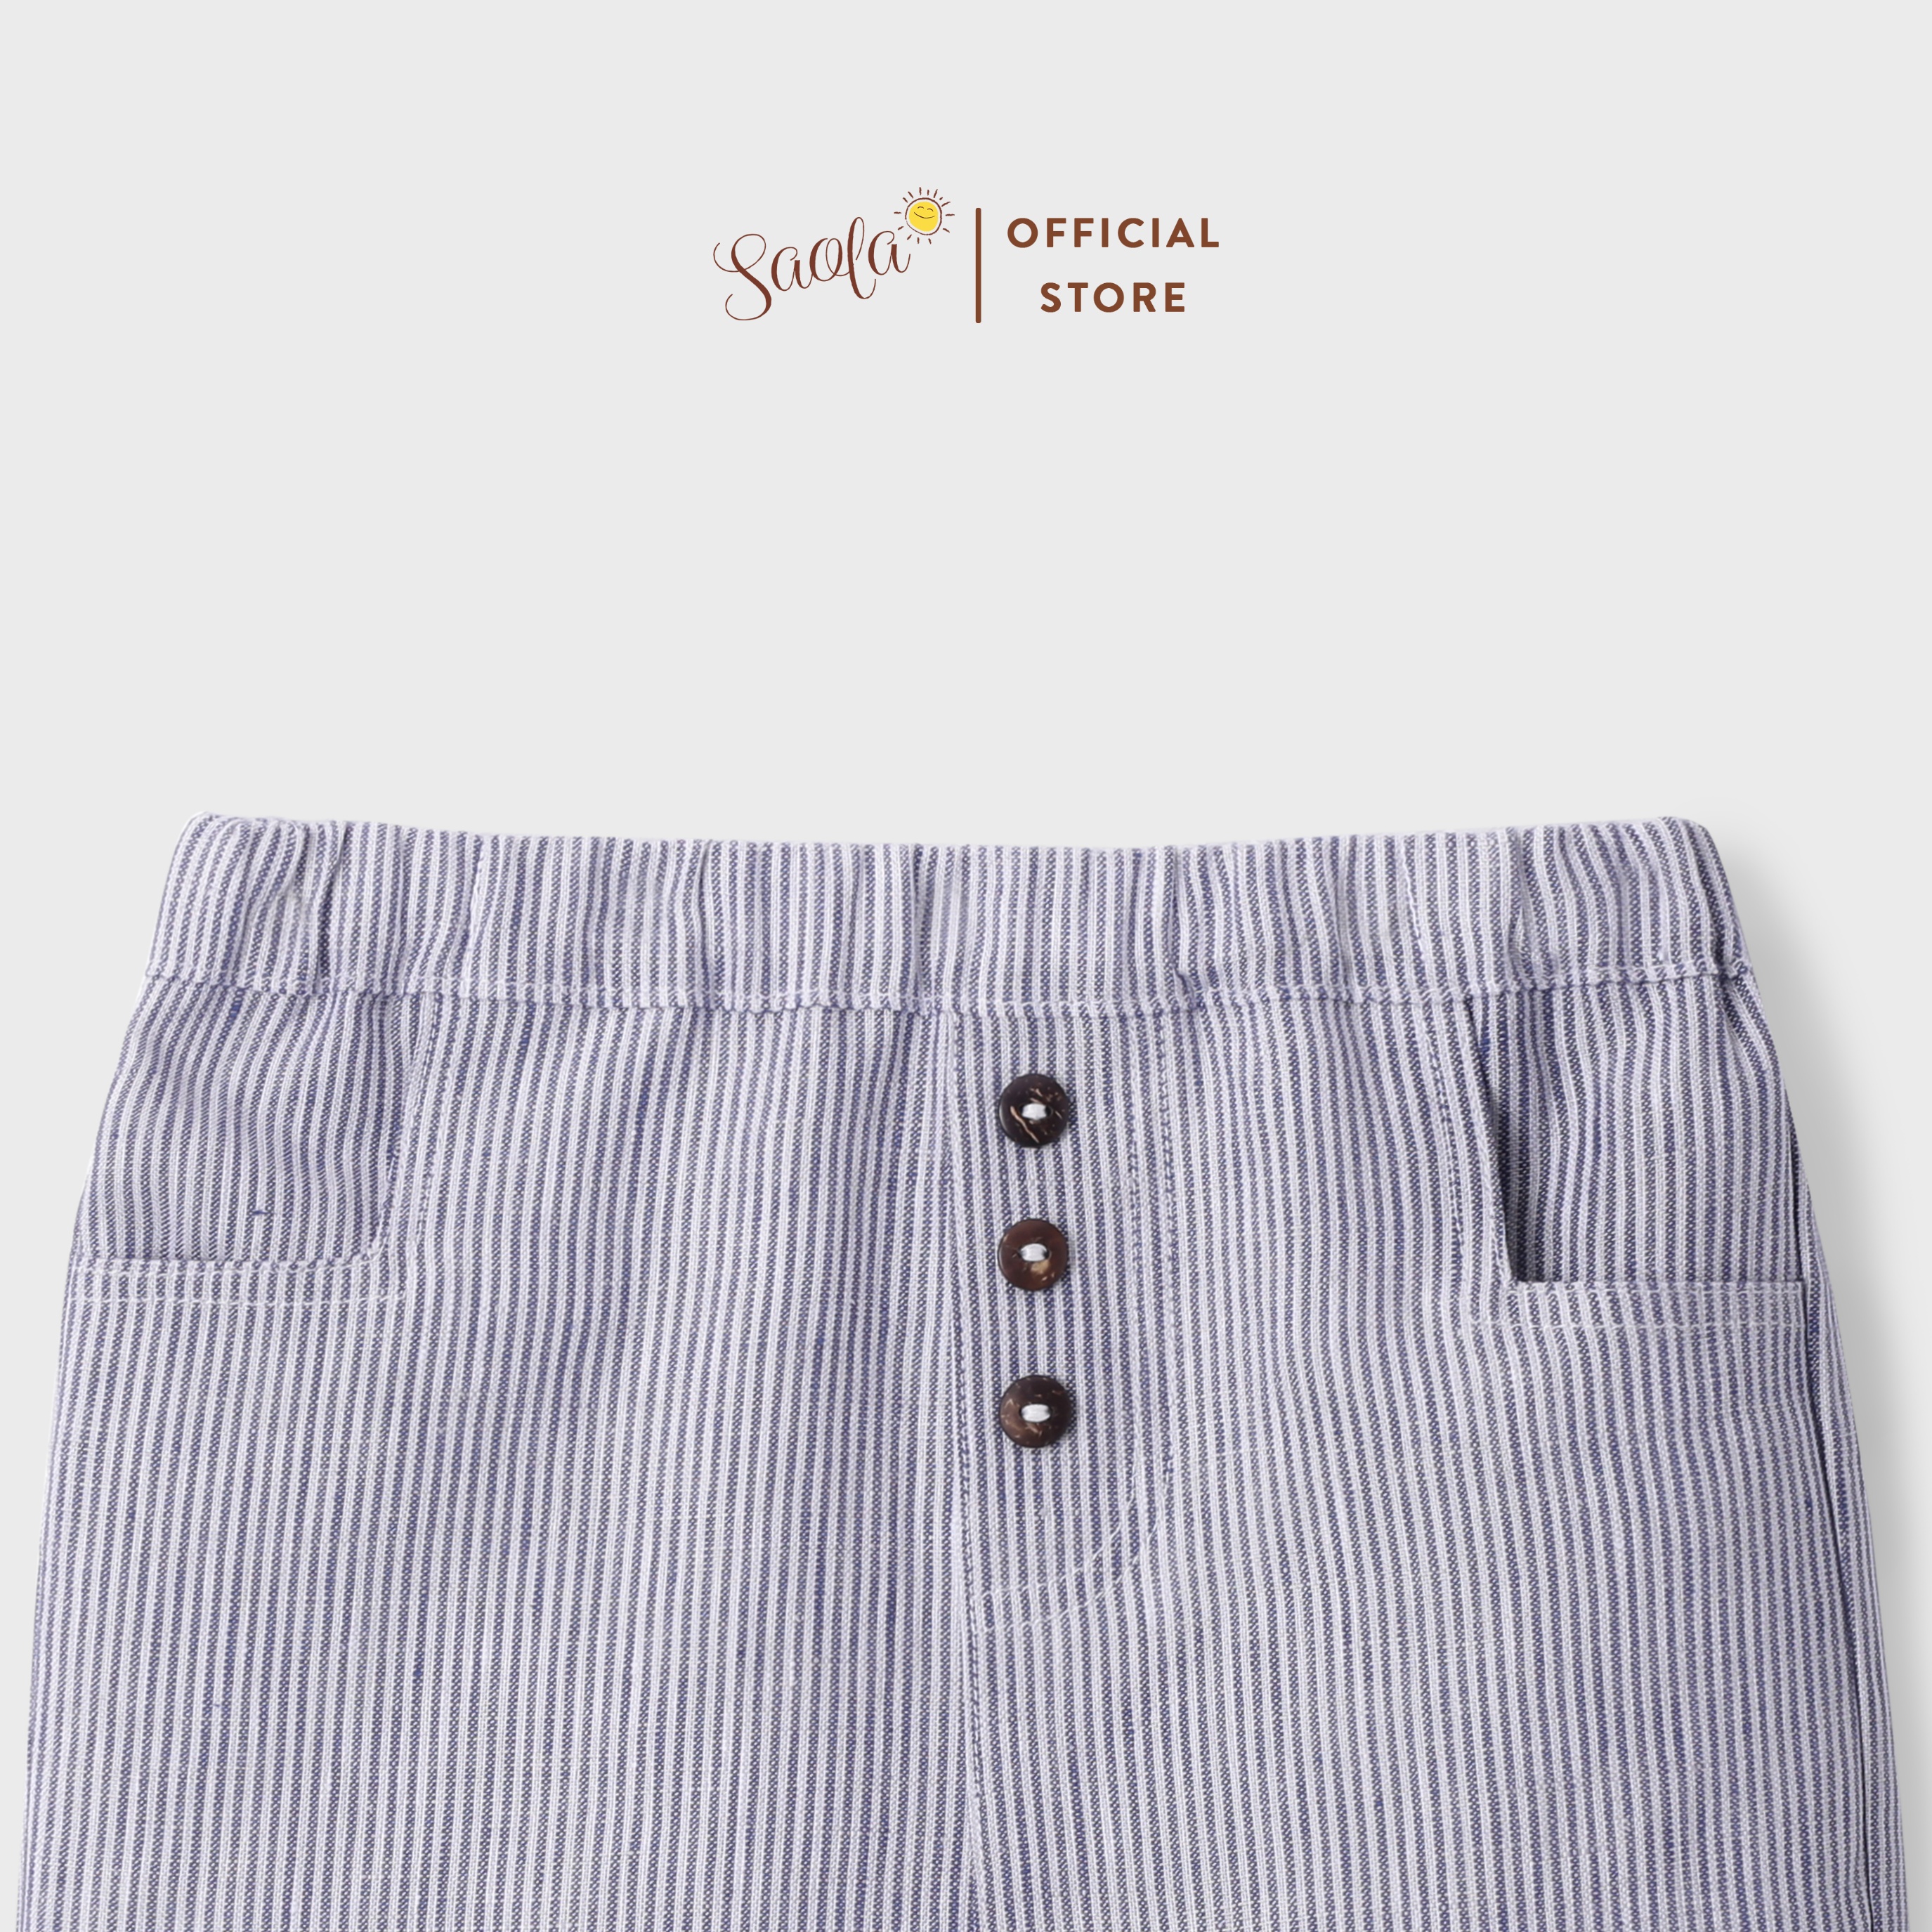 Quần Short Linen Cho Bé Trai Sành Điệu - MUDELI PANTS - PAL012 - SAOLA KIDS CLOTHING